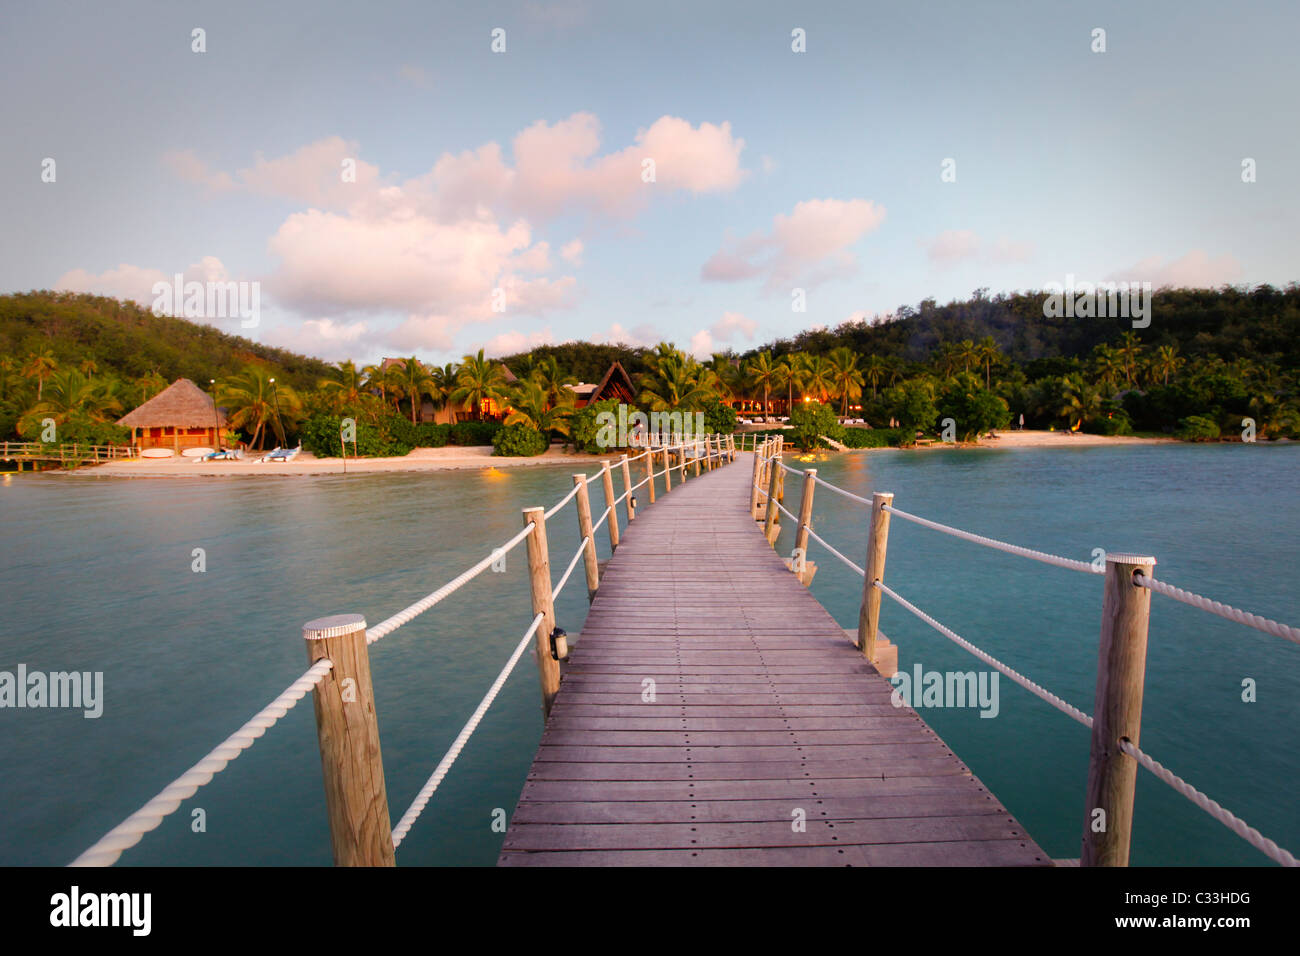 Likuliku Lagoon Resort, Malolo Island, Mamanucas, Fiji Stock Photo